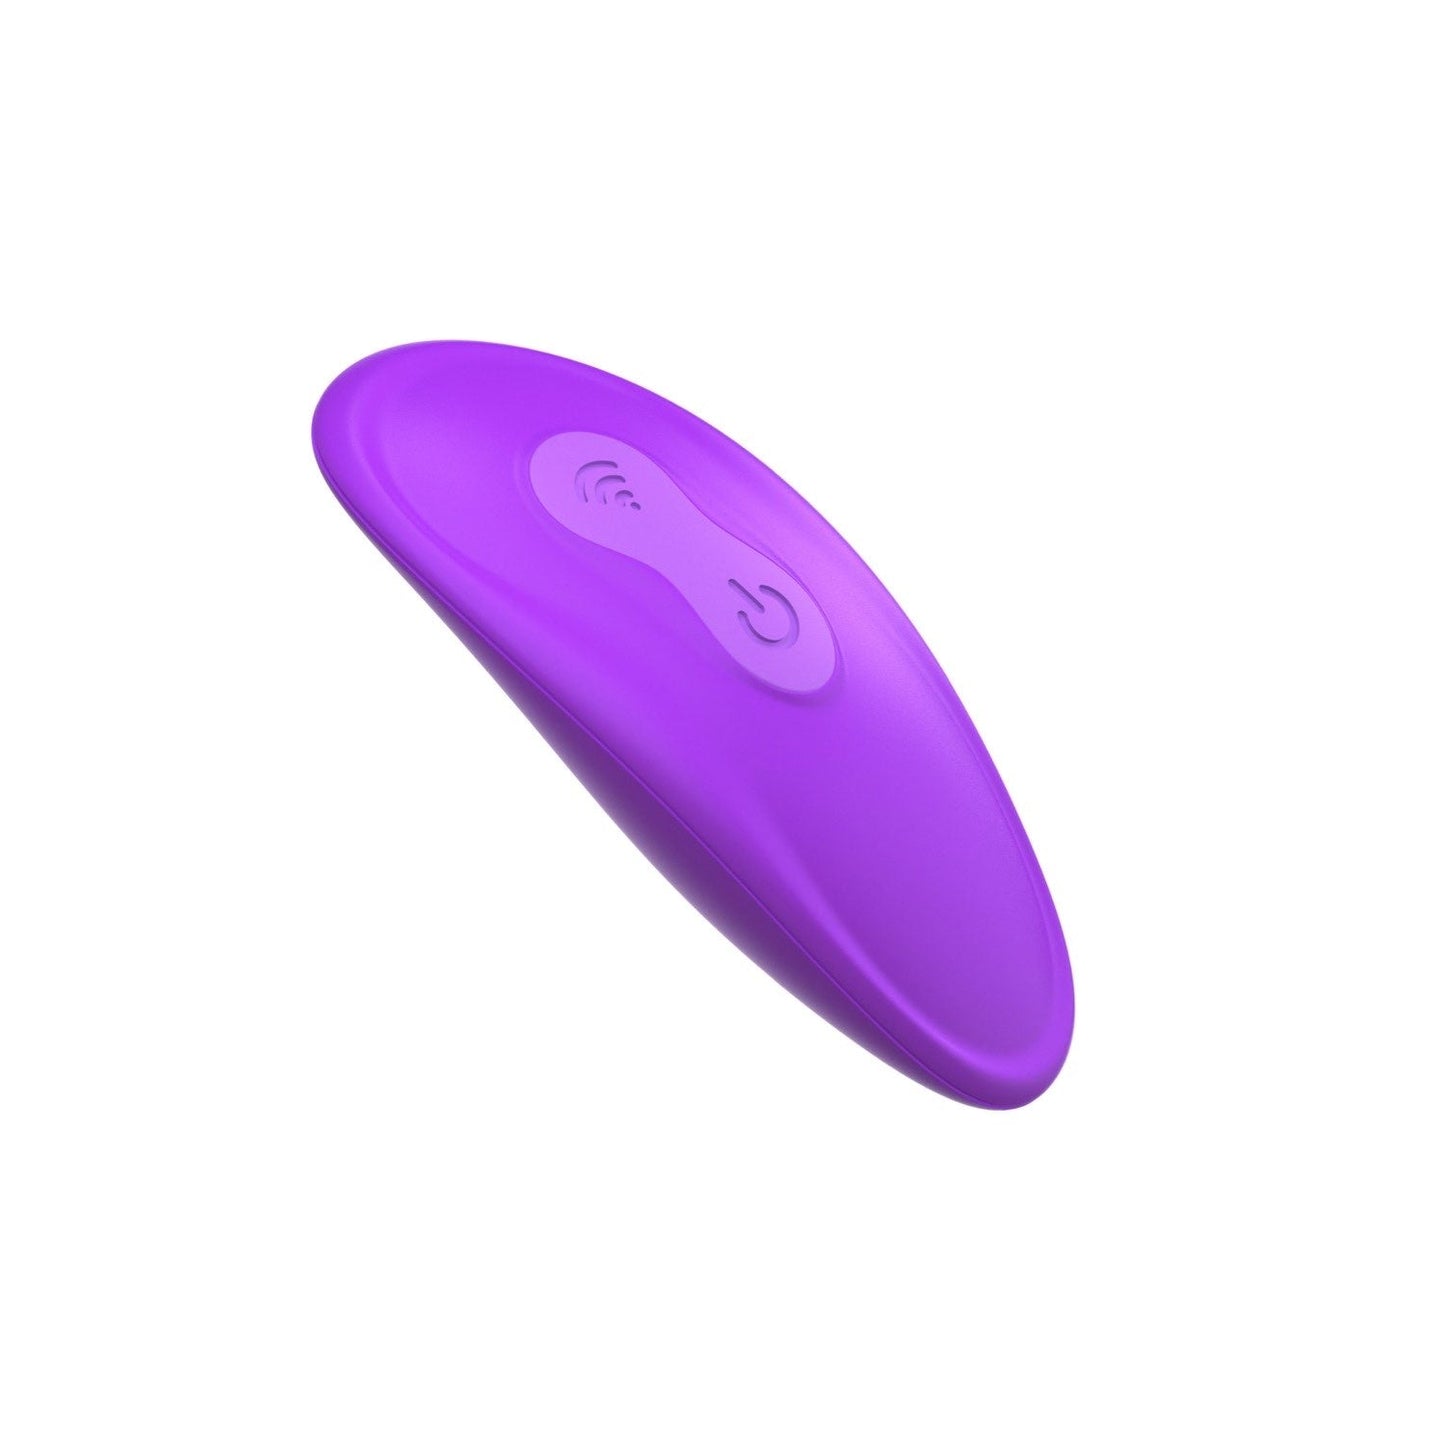 终极无肩带式绑带式 - 紫色 USB 可充电无肩带式绑带式带无线遥控